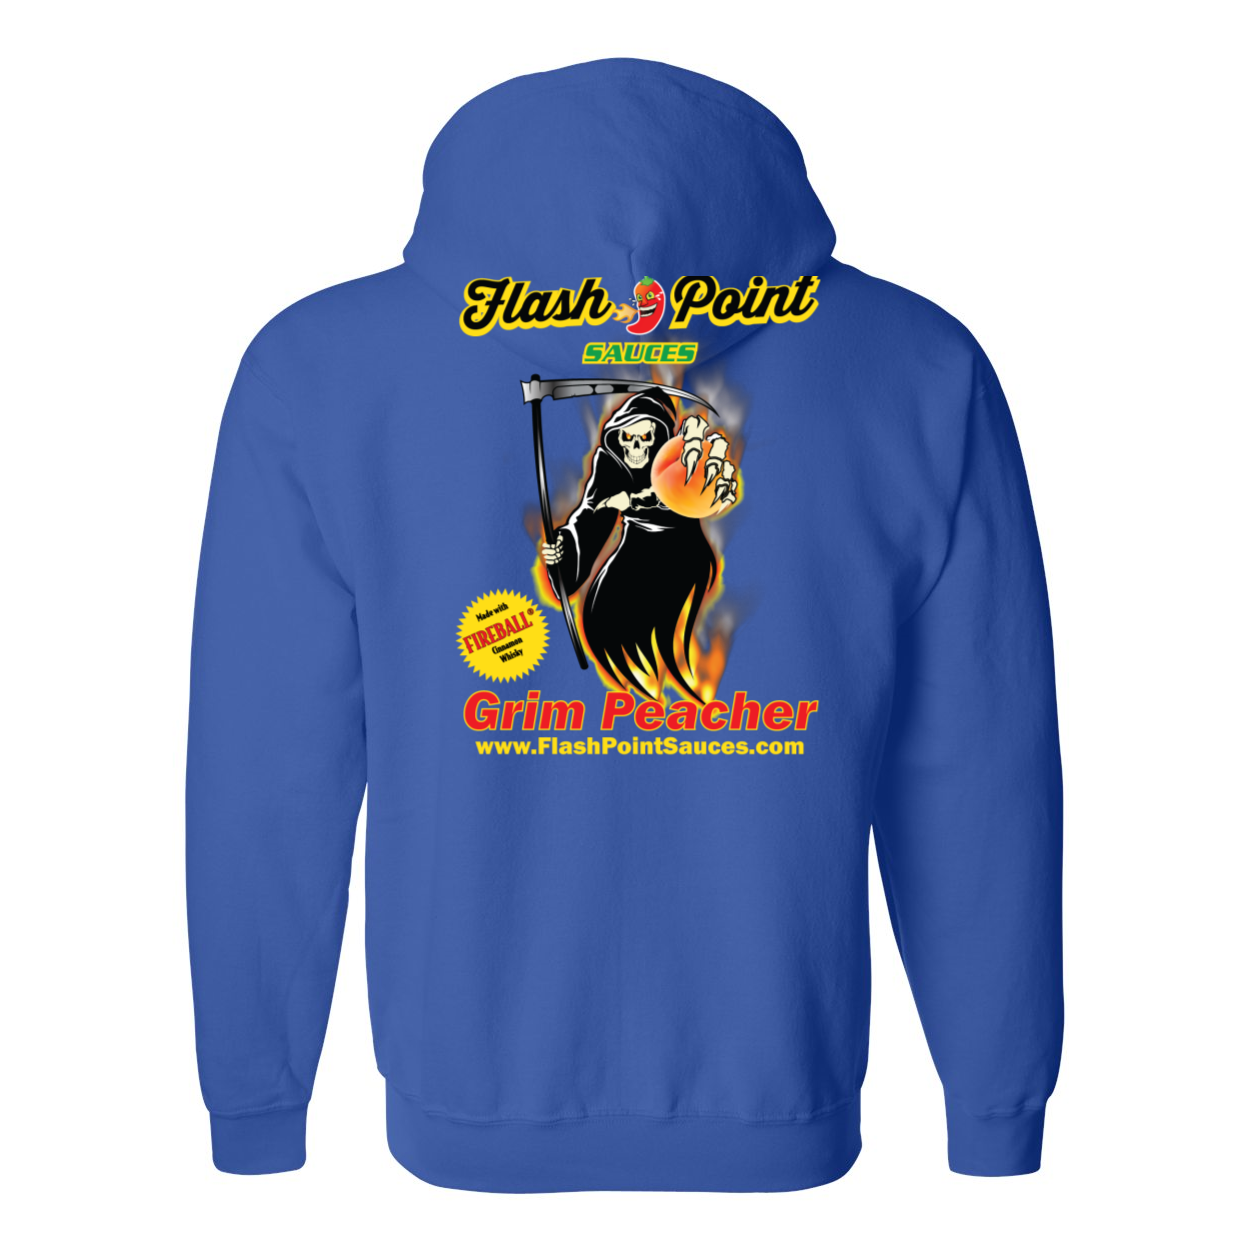 Grim Peacher Heavy Full-Zip Hooded Sweatshirt